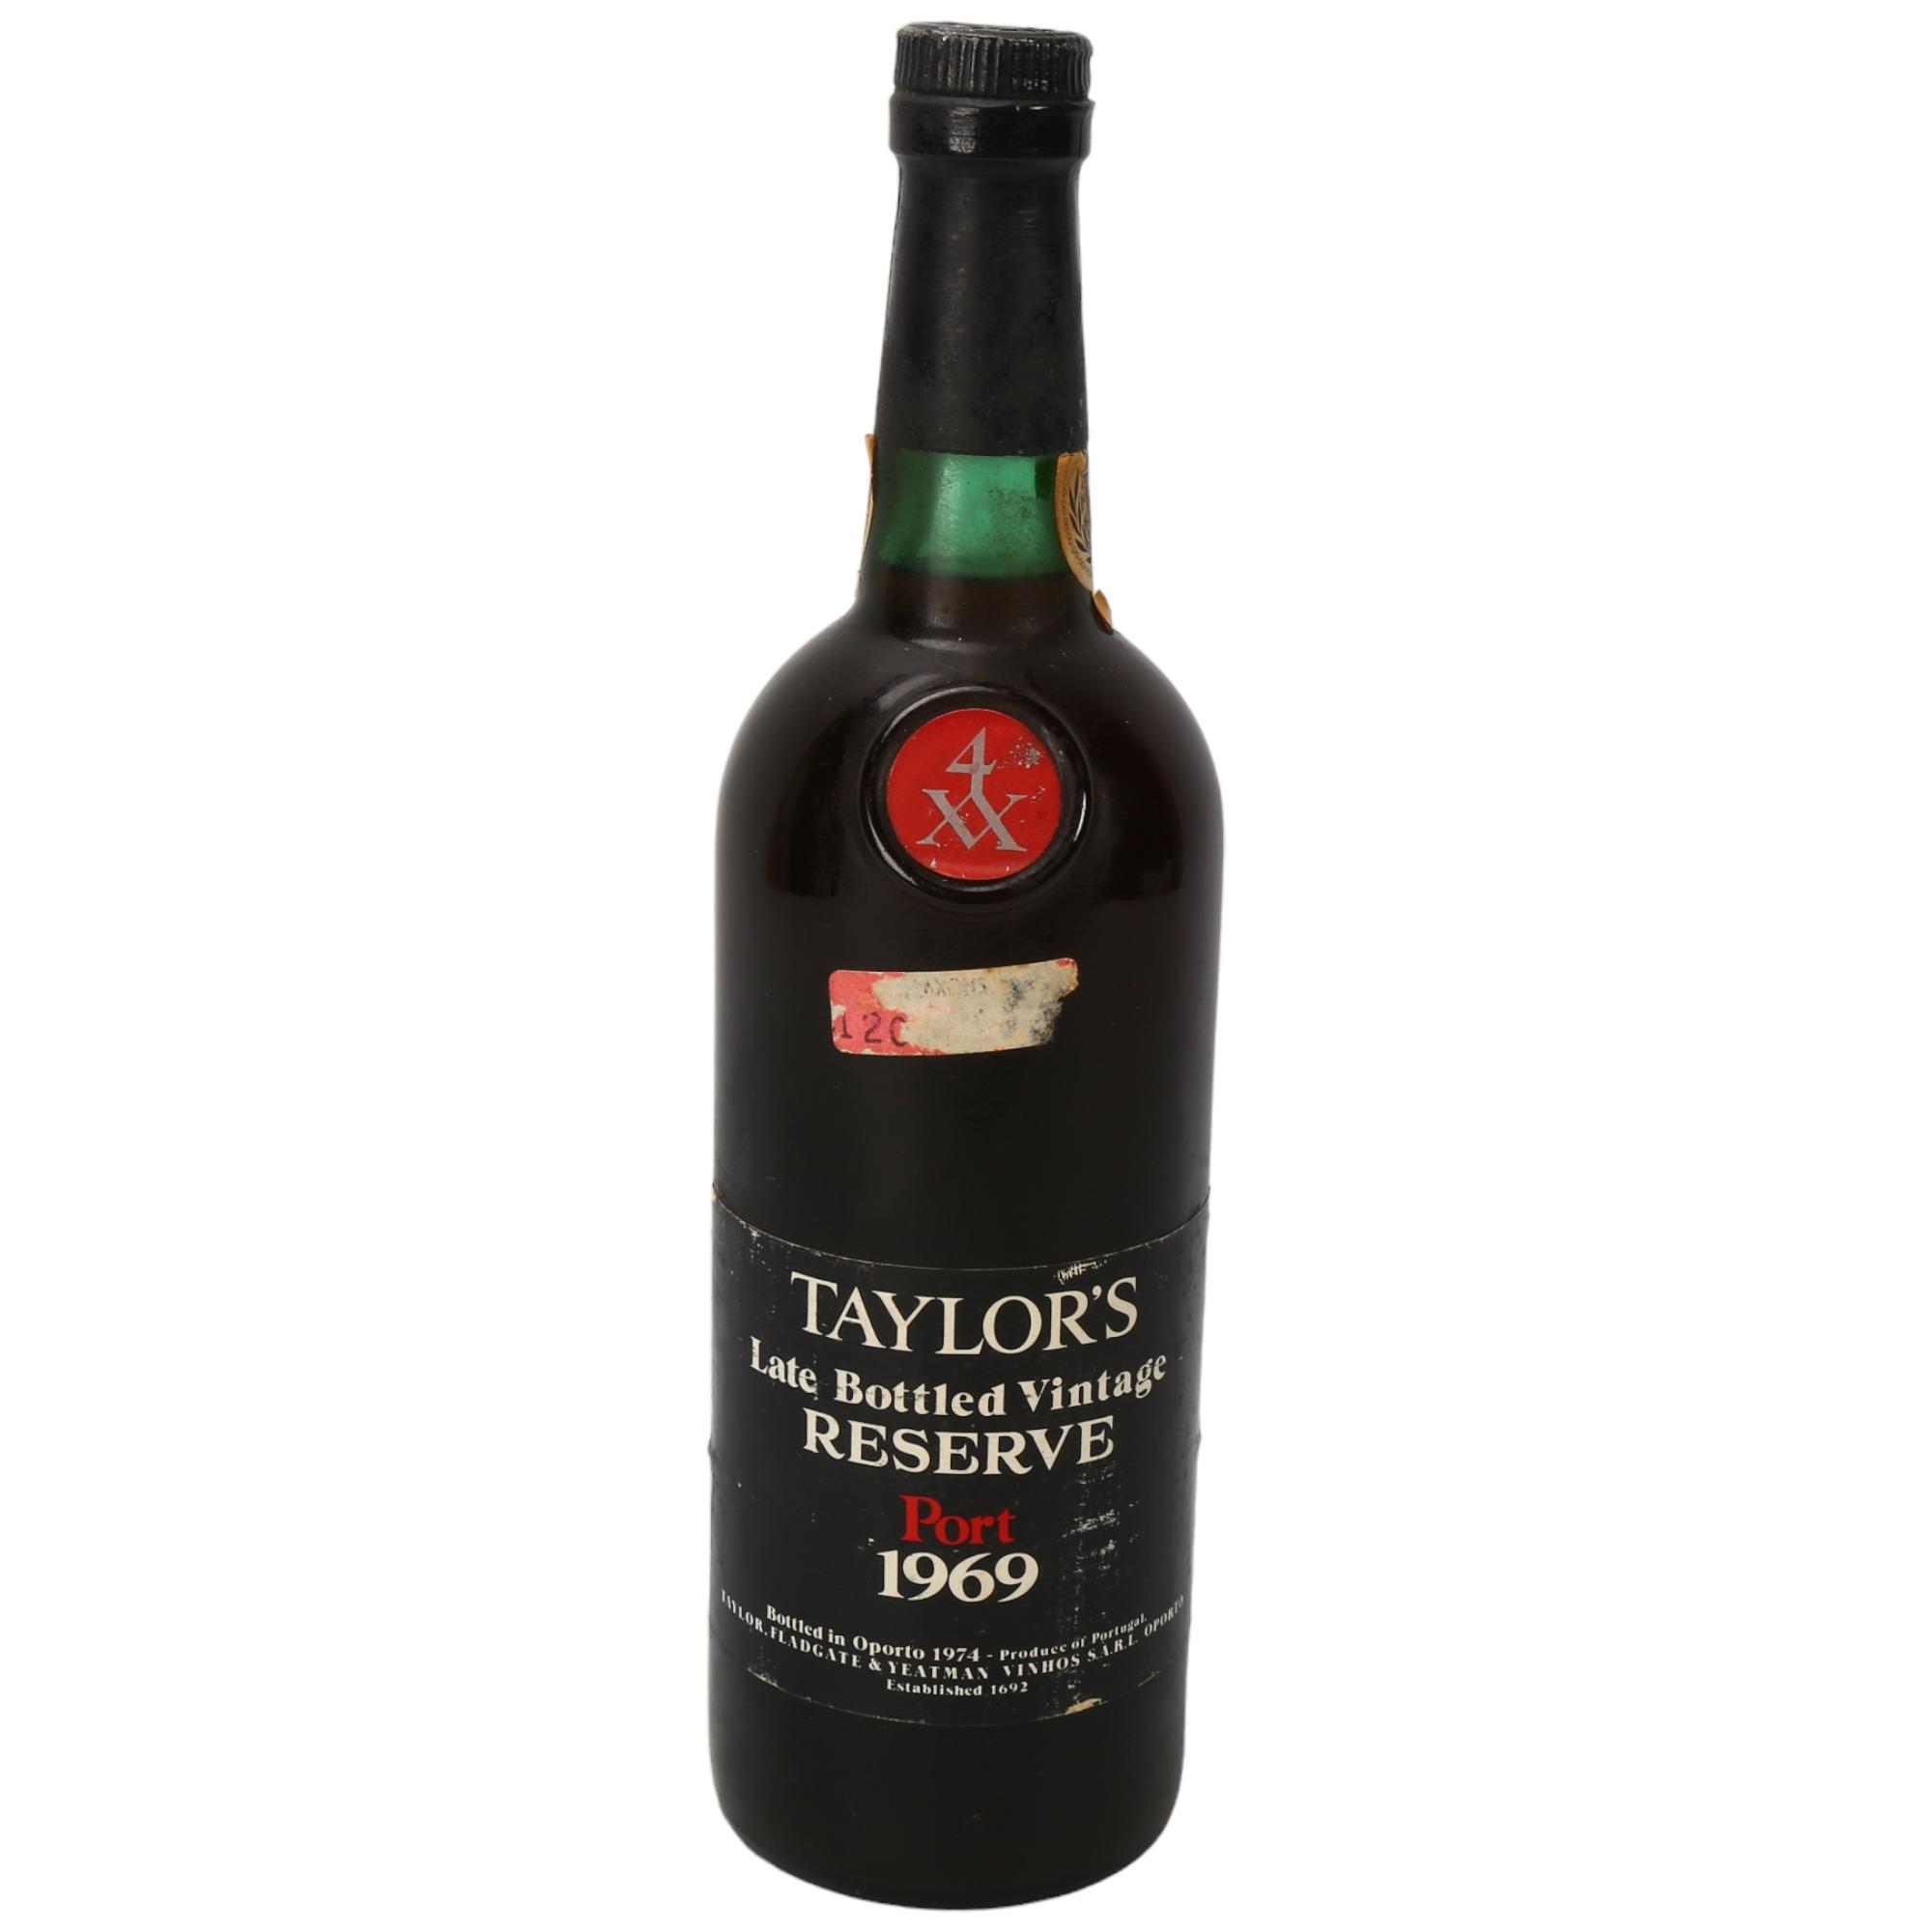 A bottle of Taylors 1969 Late Bottled Vintage Port